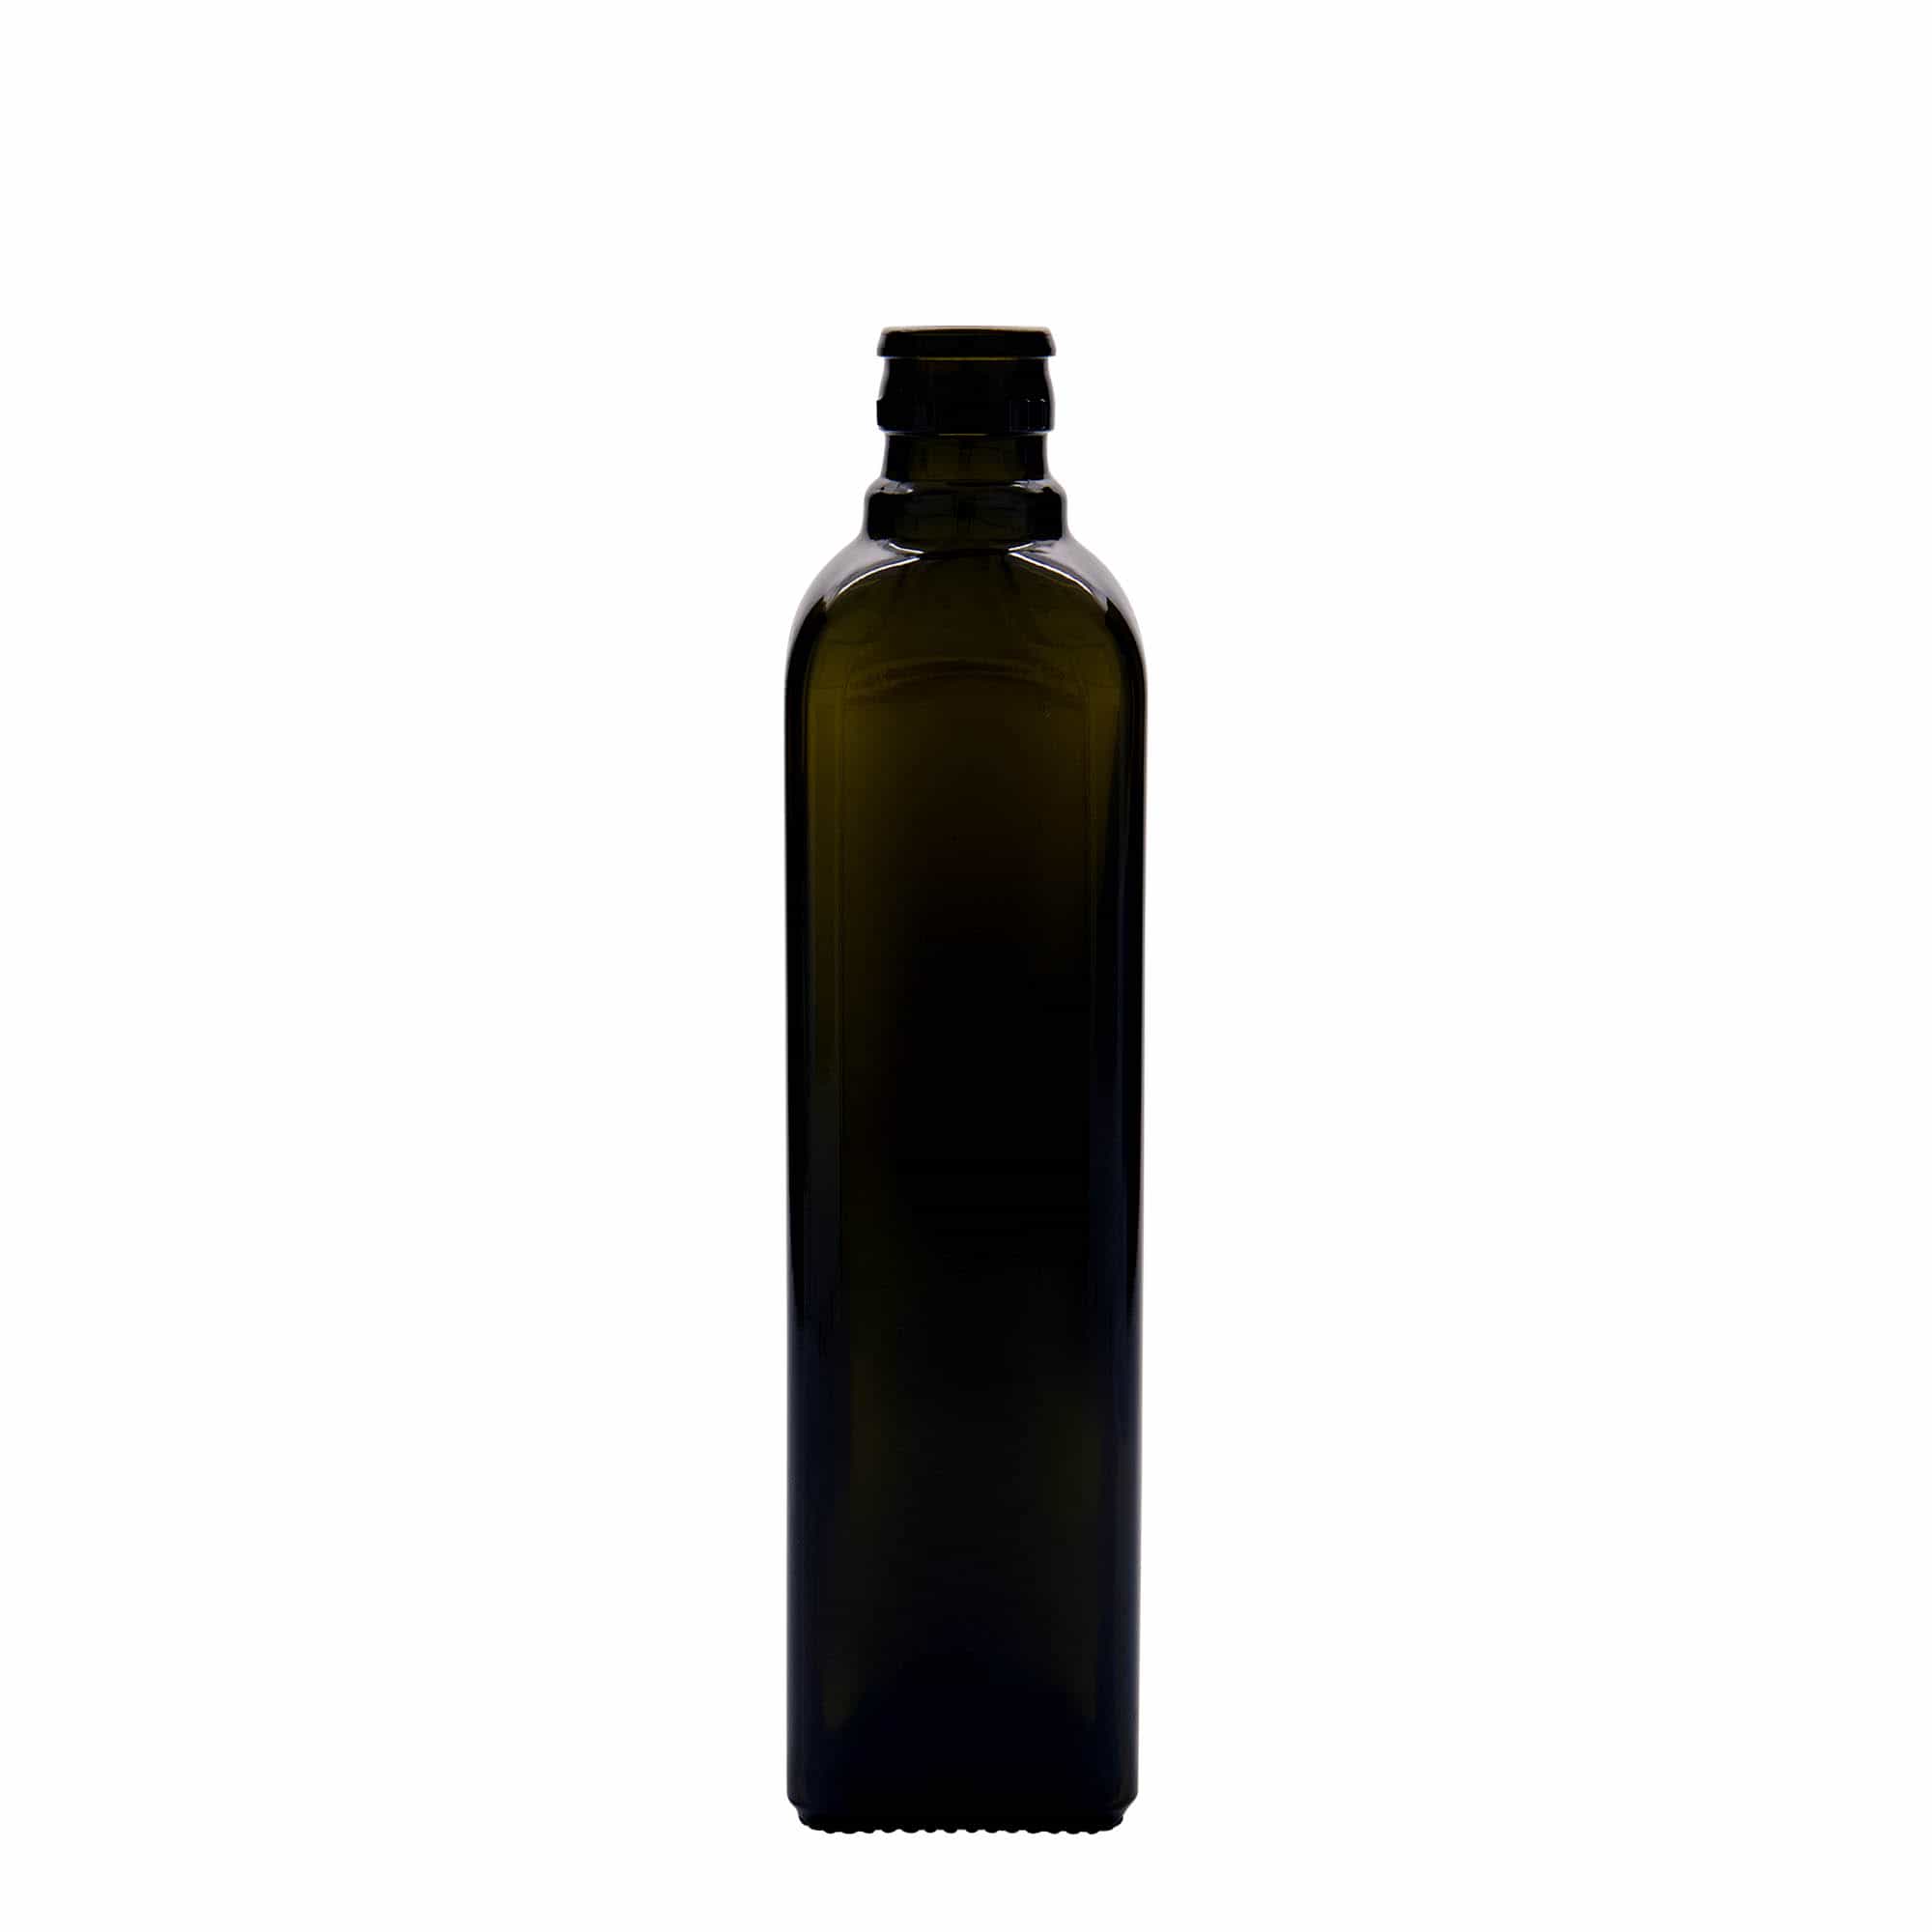 500 ml Bottiglia olio/aceto 'Quadra', vetro, quadrata, verde antico, imboccatura: DOP